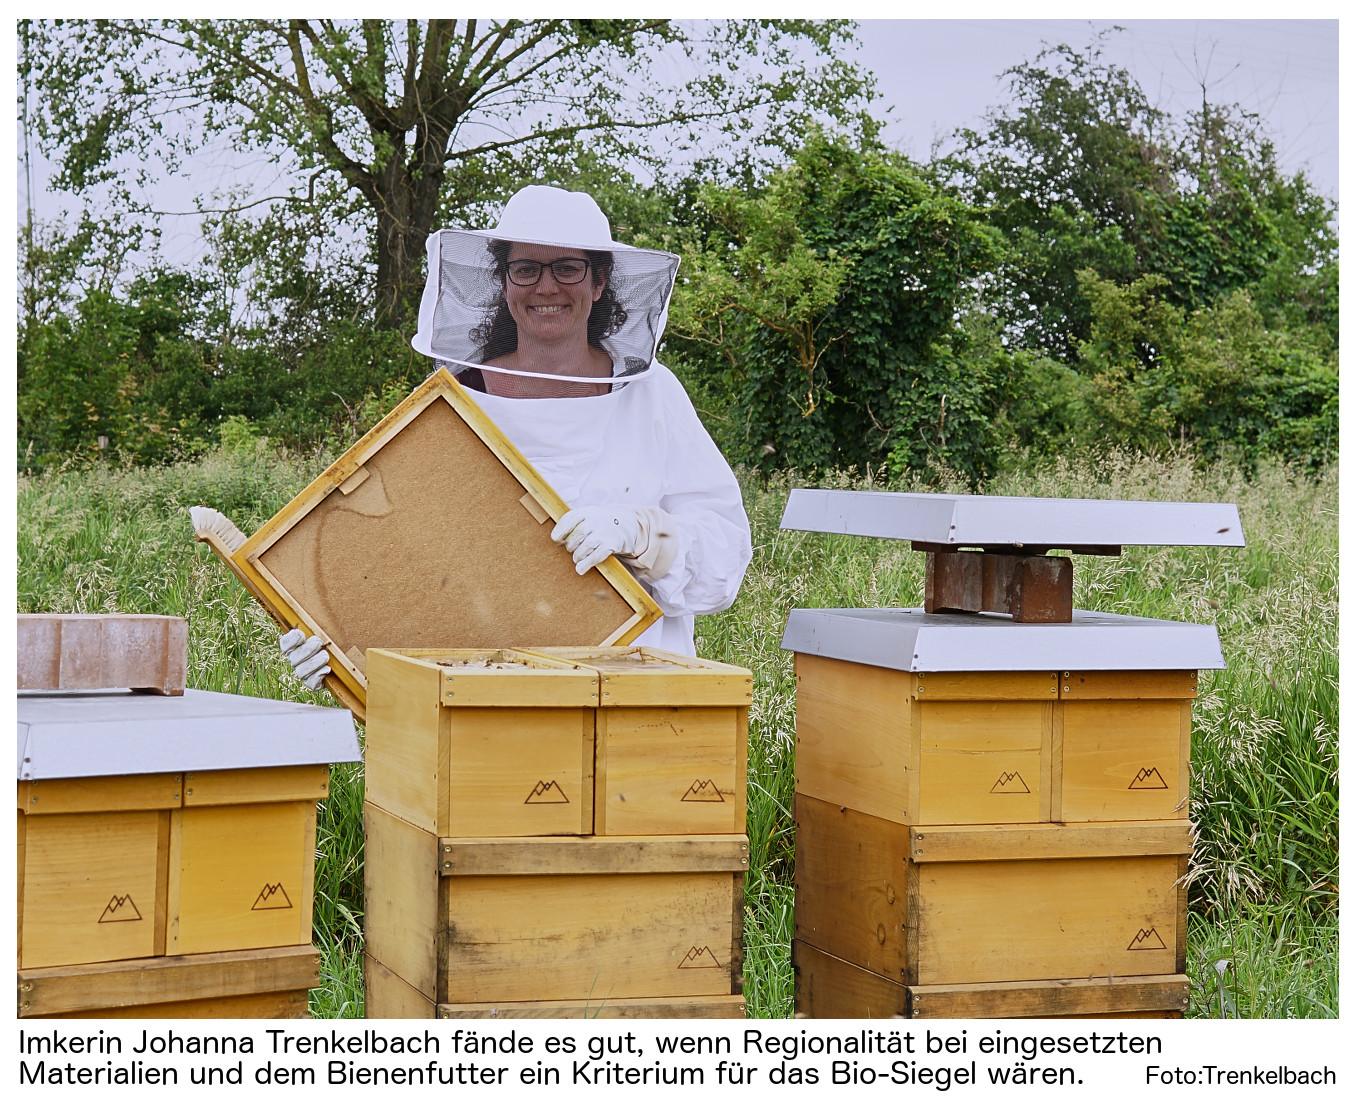 Packung of 10 Nutztier Entry Gate Bienenhaltung Bienenzucht-Ausrüstung 